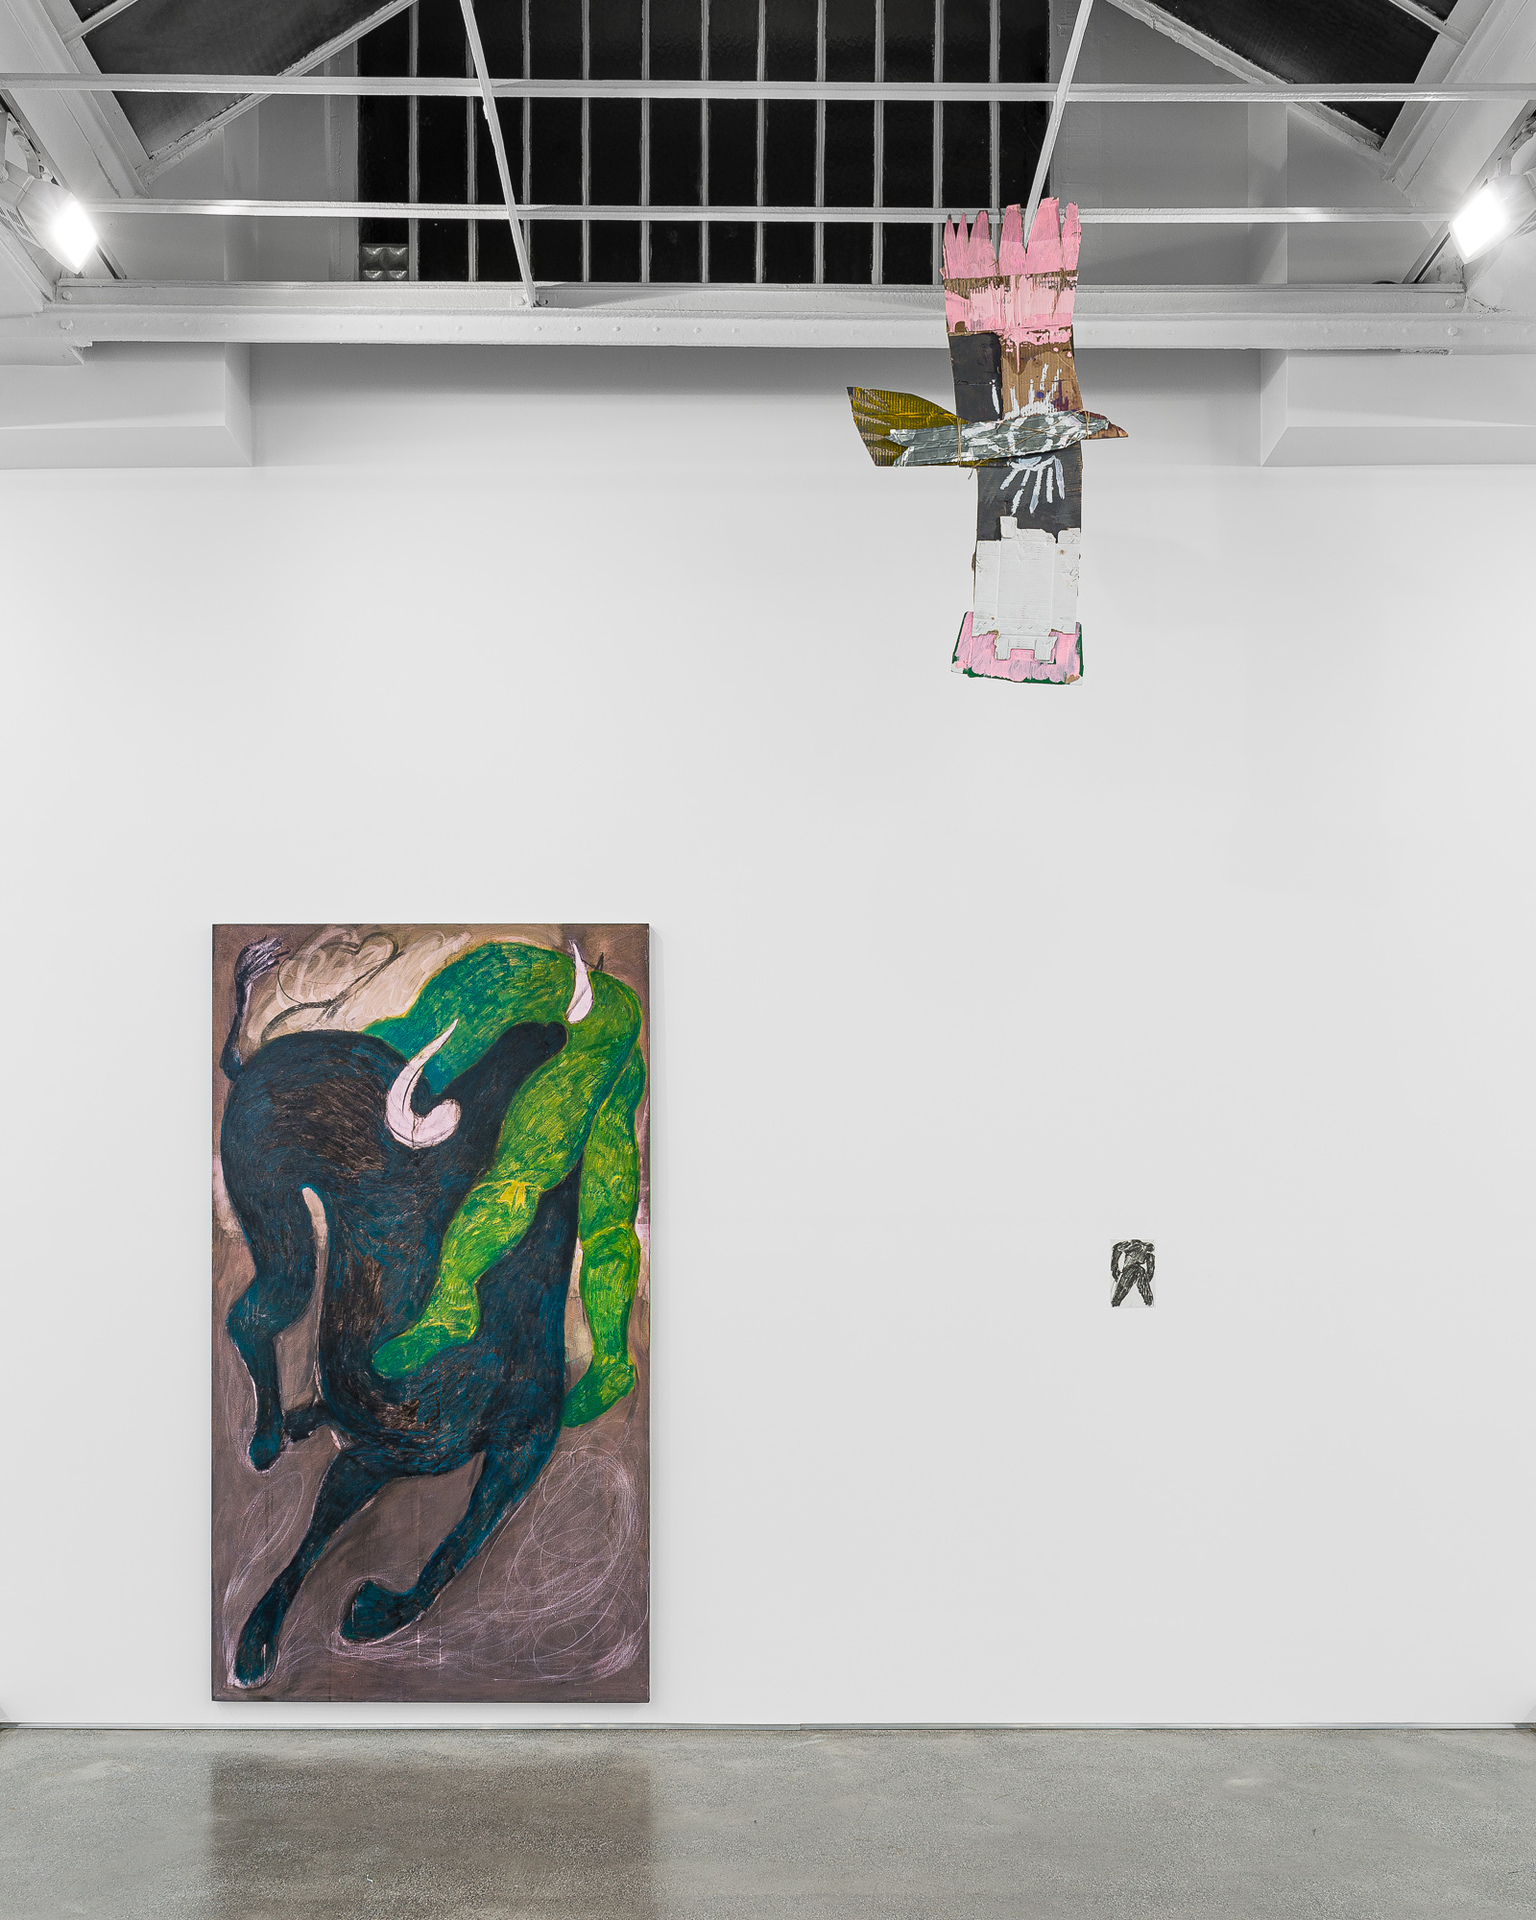 Alex Foxton, "Hex", exhibition view, 2022, Galerie Derouillon, Paris